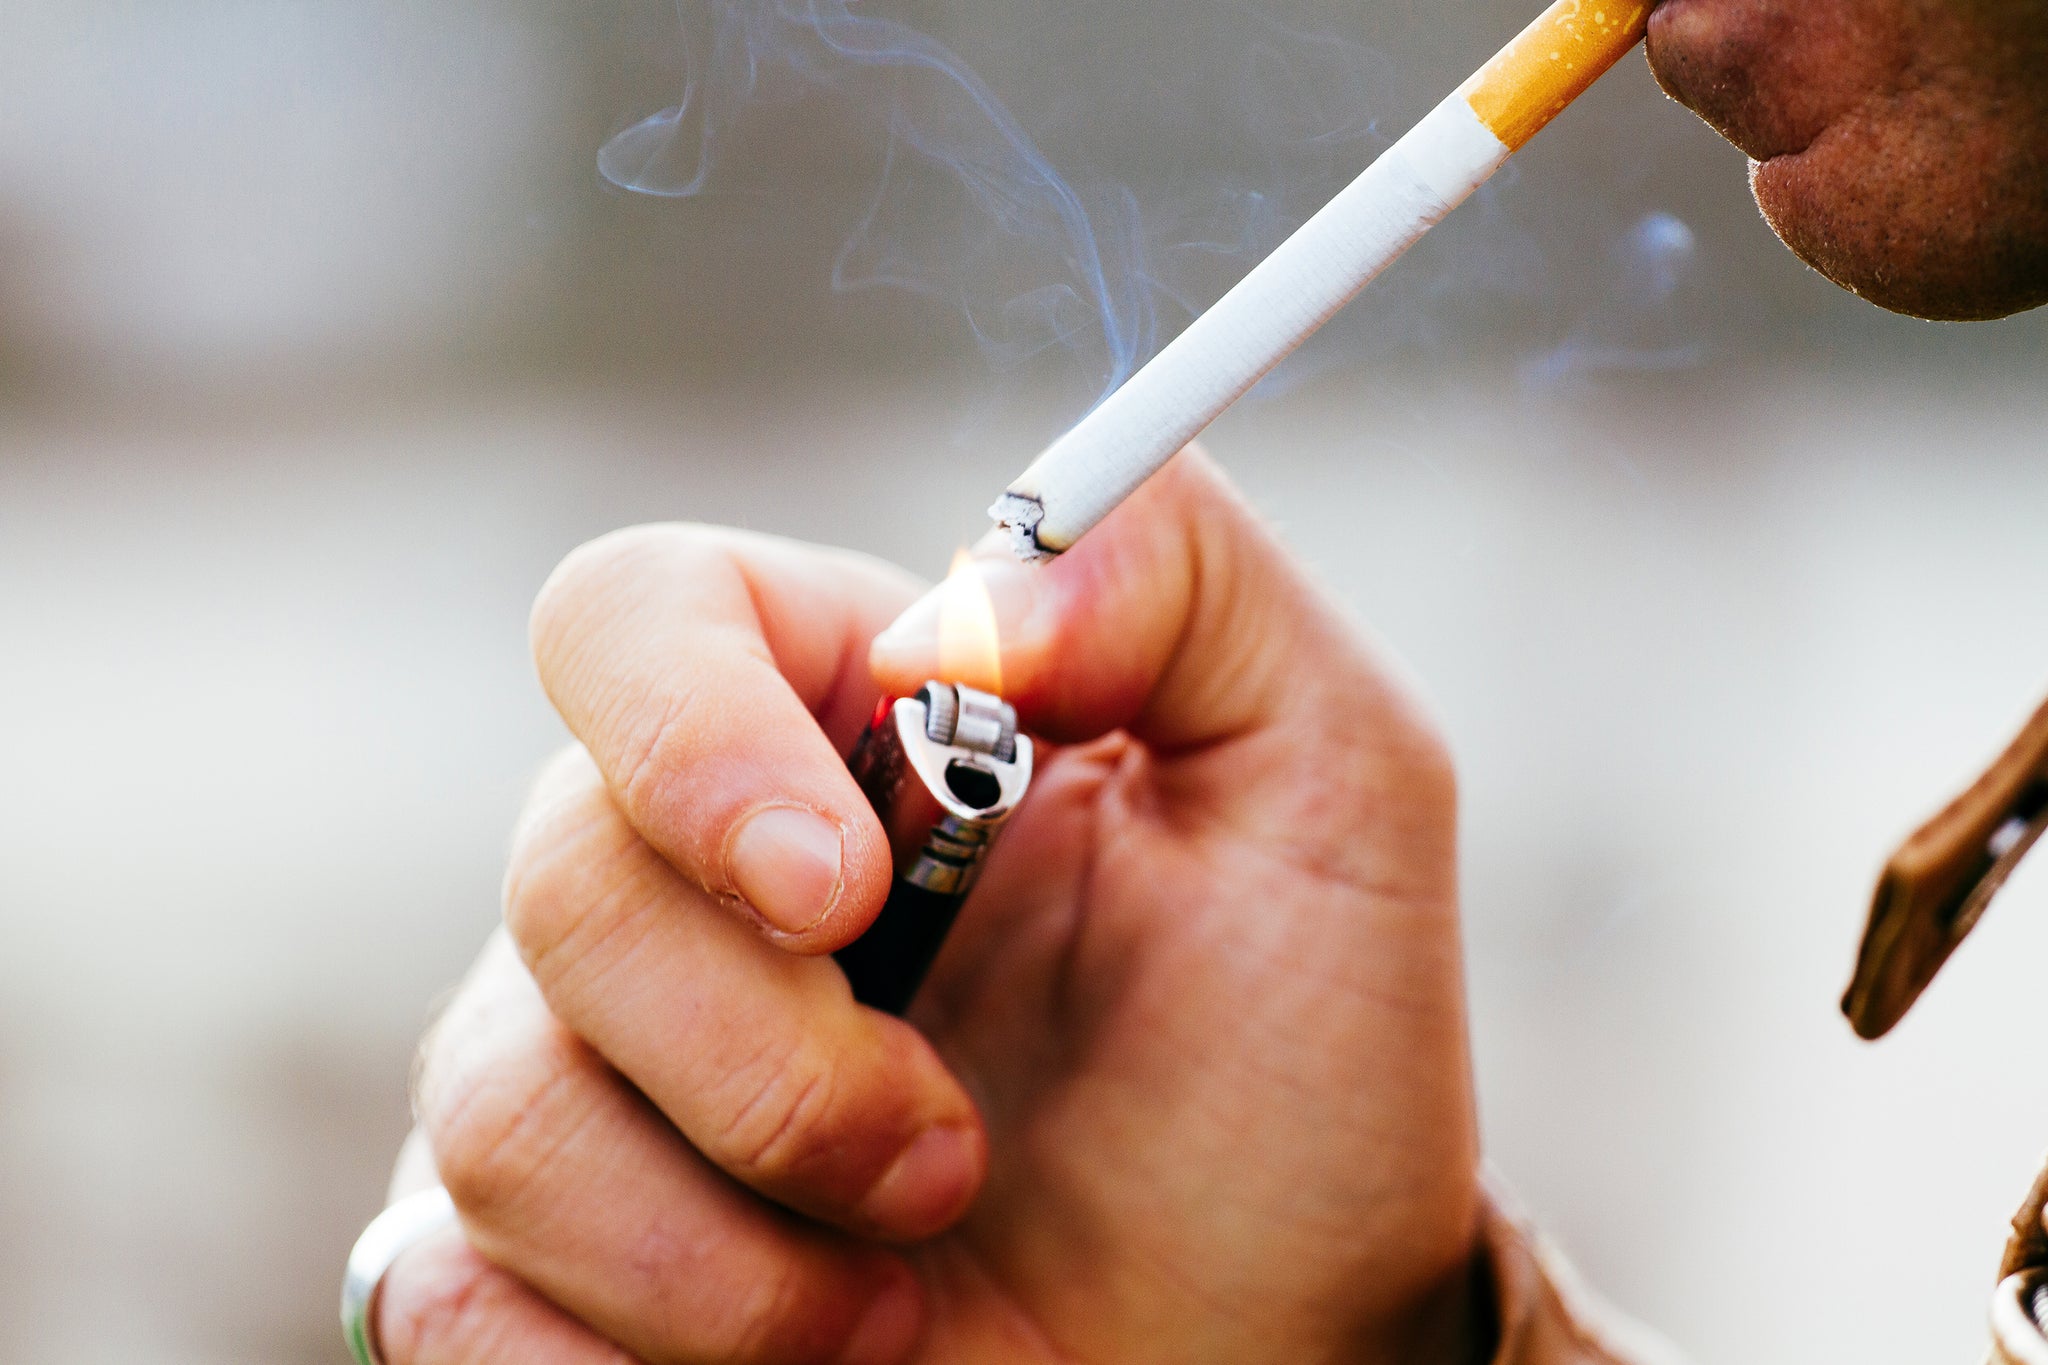 Fumeur qui s'allume une cigarette et laisse des odeurs.